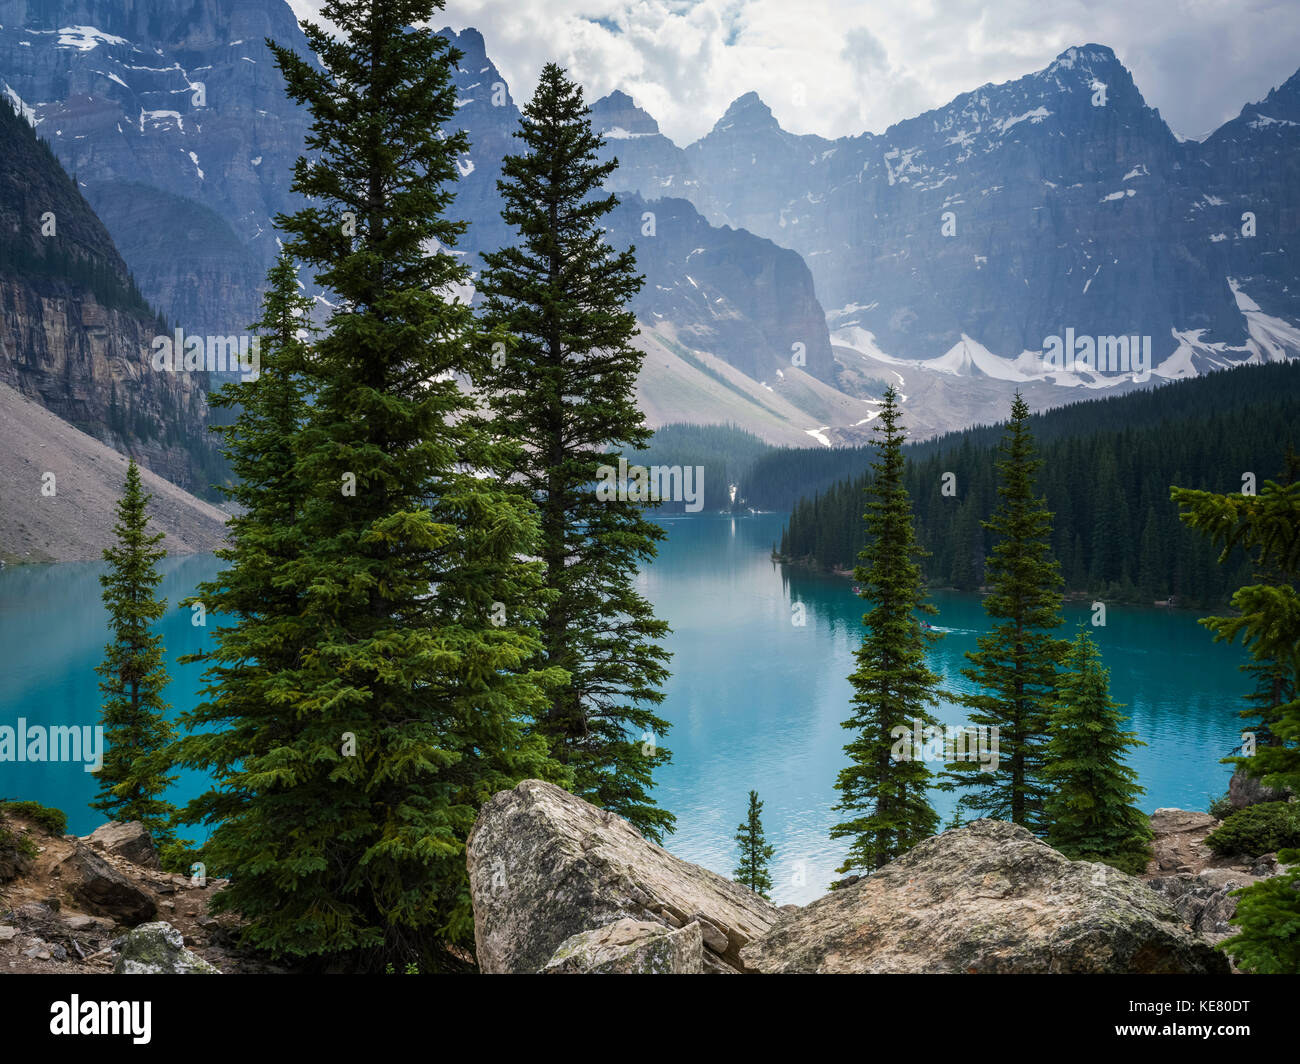 Vue imprenable sur les sommets des montagnes Rocheuses canadiennes et d'un turquoise paisible lac Moraine de forêts le long du littoral Banque D'Images